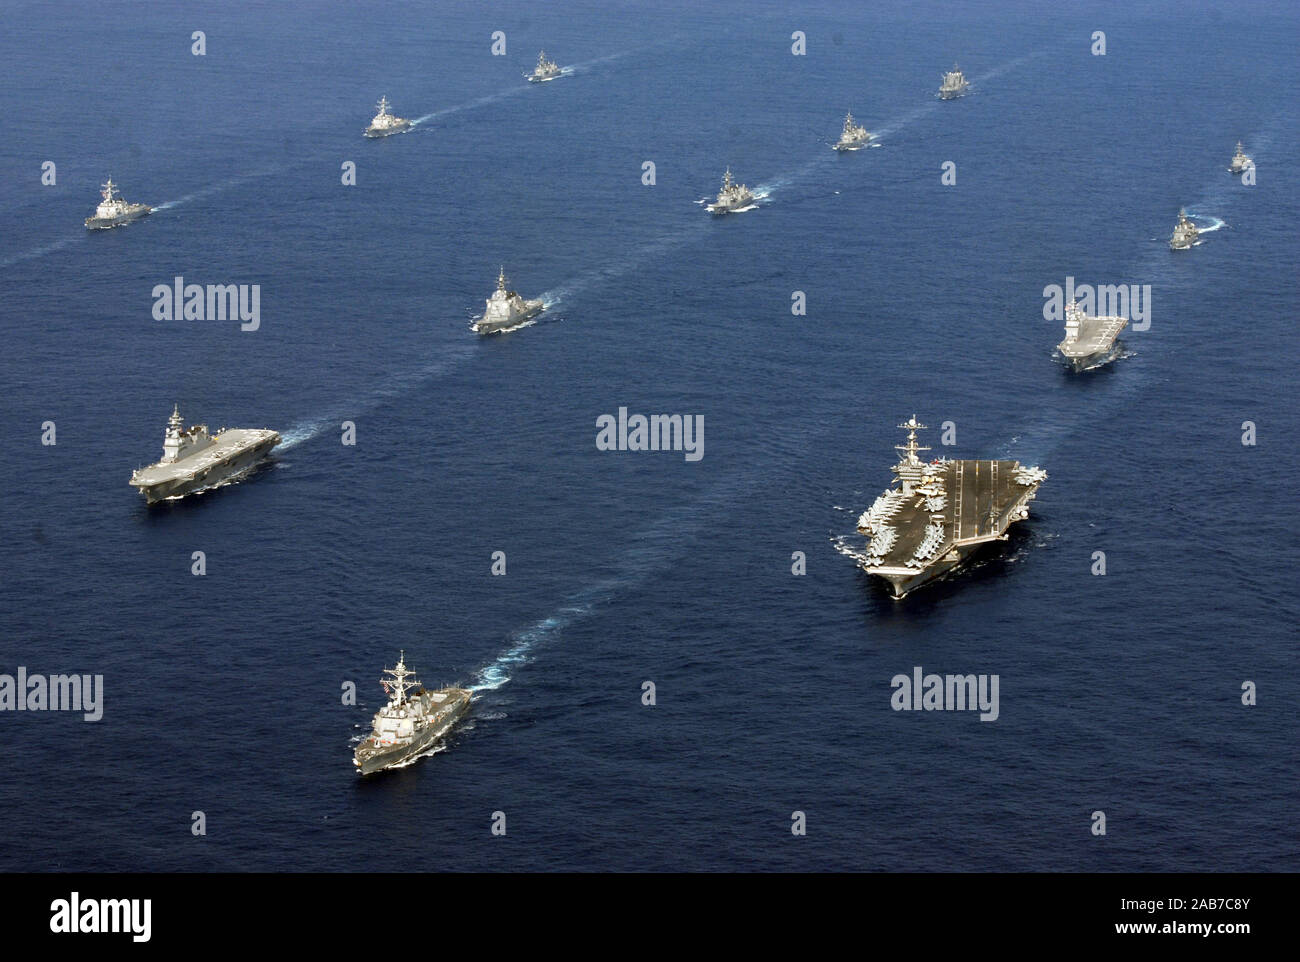 EAST CHINA SEA (Nov. 16, 2012) 24 sechs Schiffe der U.S. Navy und der Japanischen maritimen Verteidigung-kraft sind zusammen unterwegs nach Abschluss der Übung scharfes Schwert 2013. Scharfes Schwert 2013 ist ein halbjährlicher Ausübung gehalten, damit die USA und Japan in Abstimmung verfahren zu trainieren und Interoperabilität wirksam zu verteidigen oder zu einer Krise in Japan und der asiatisch-pazifischen Region reagieren zu erhöhen. Stockfoto